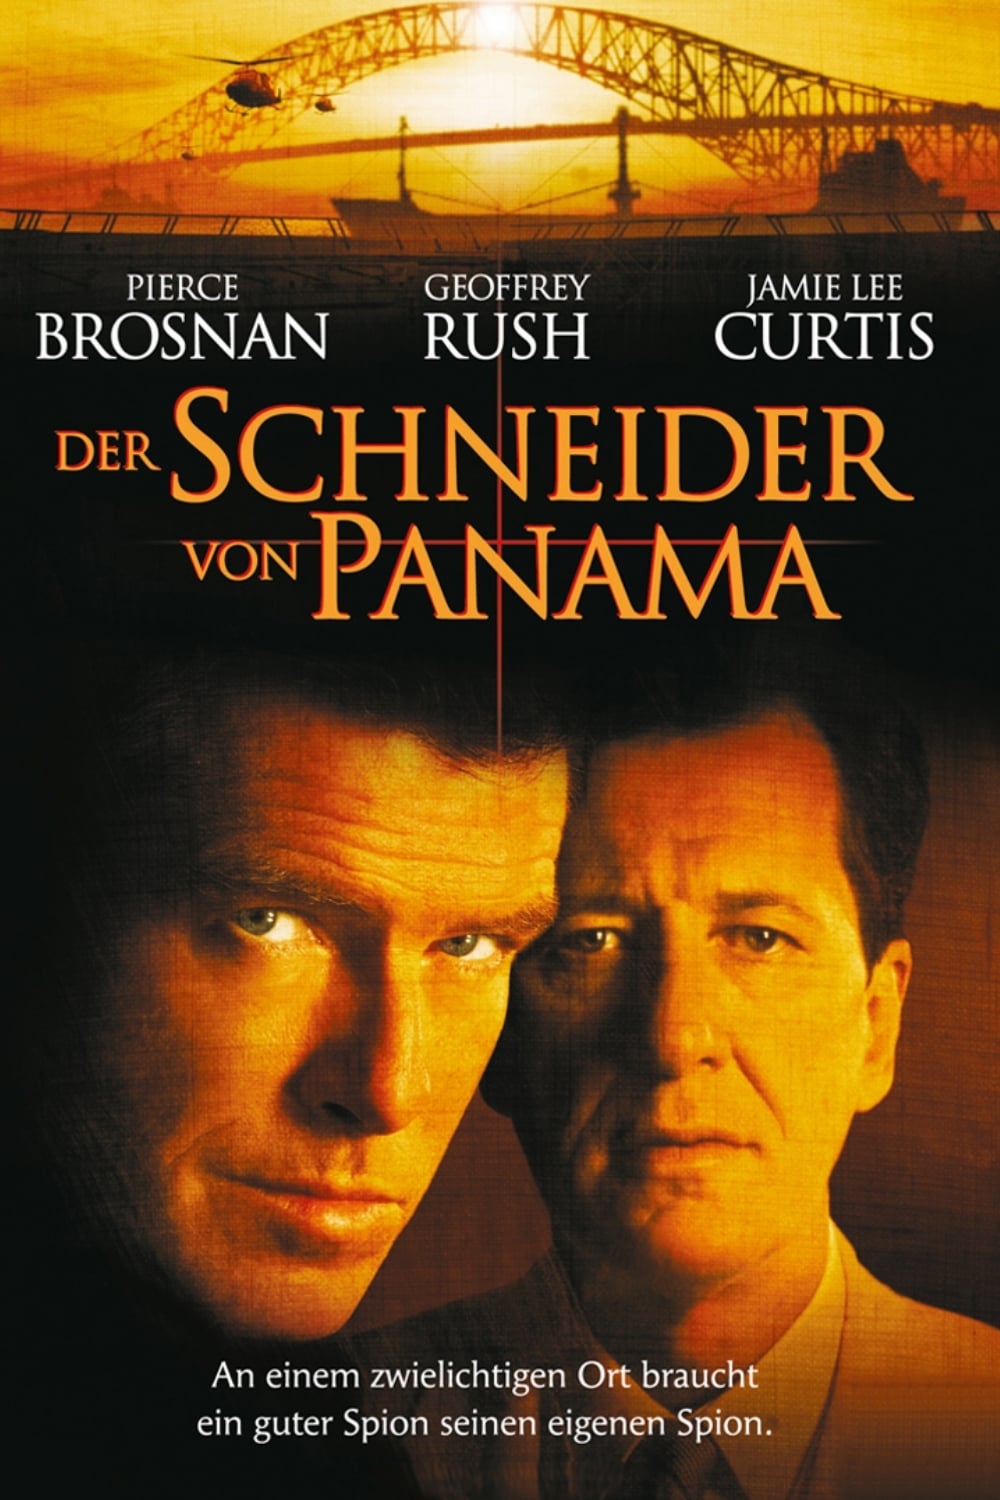 Plakat von "Der Schneider von Panama"